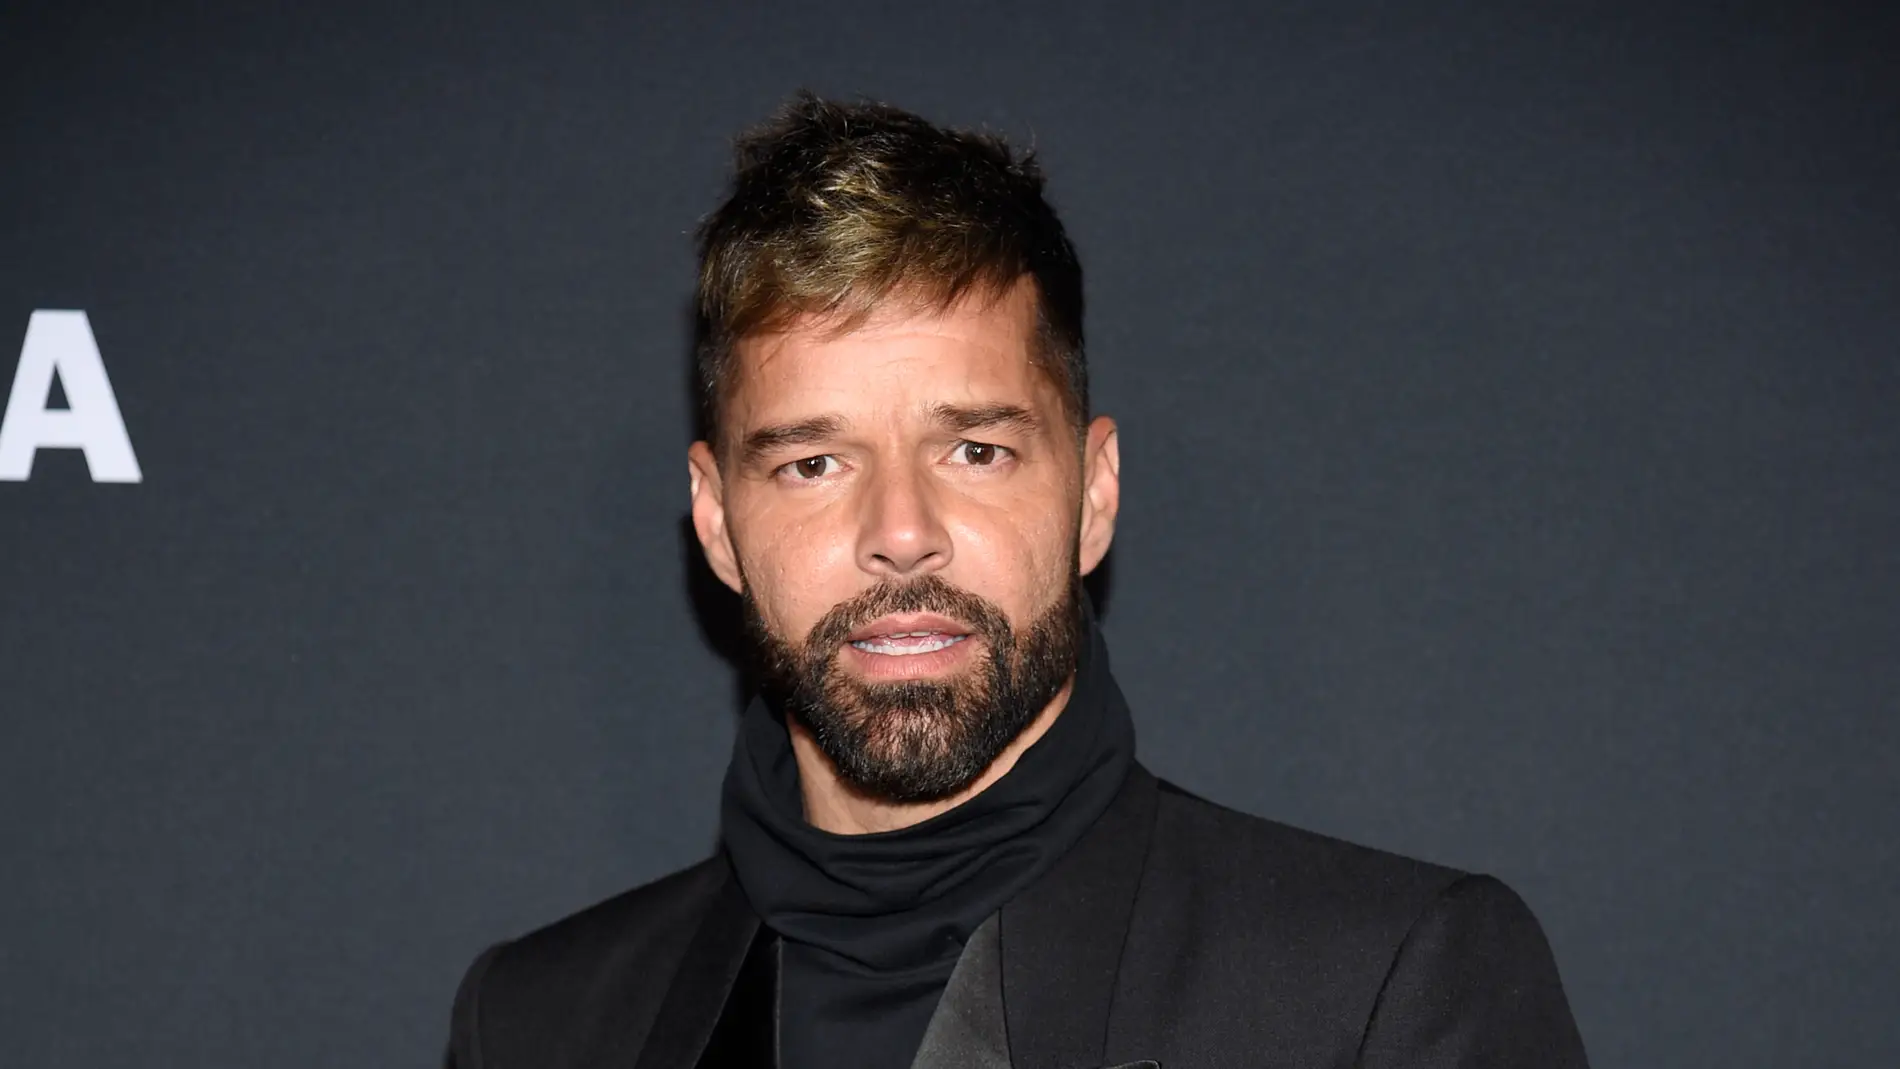  Ricky Martin, acusado de incesto por su sobrino